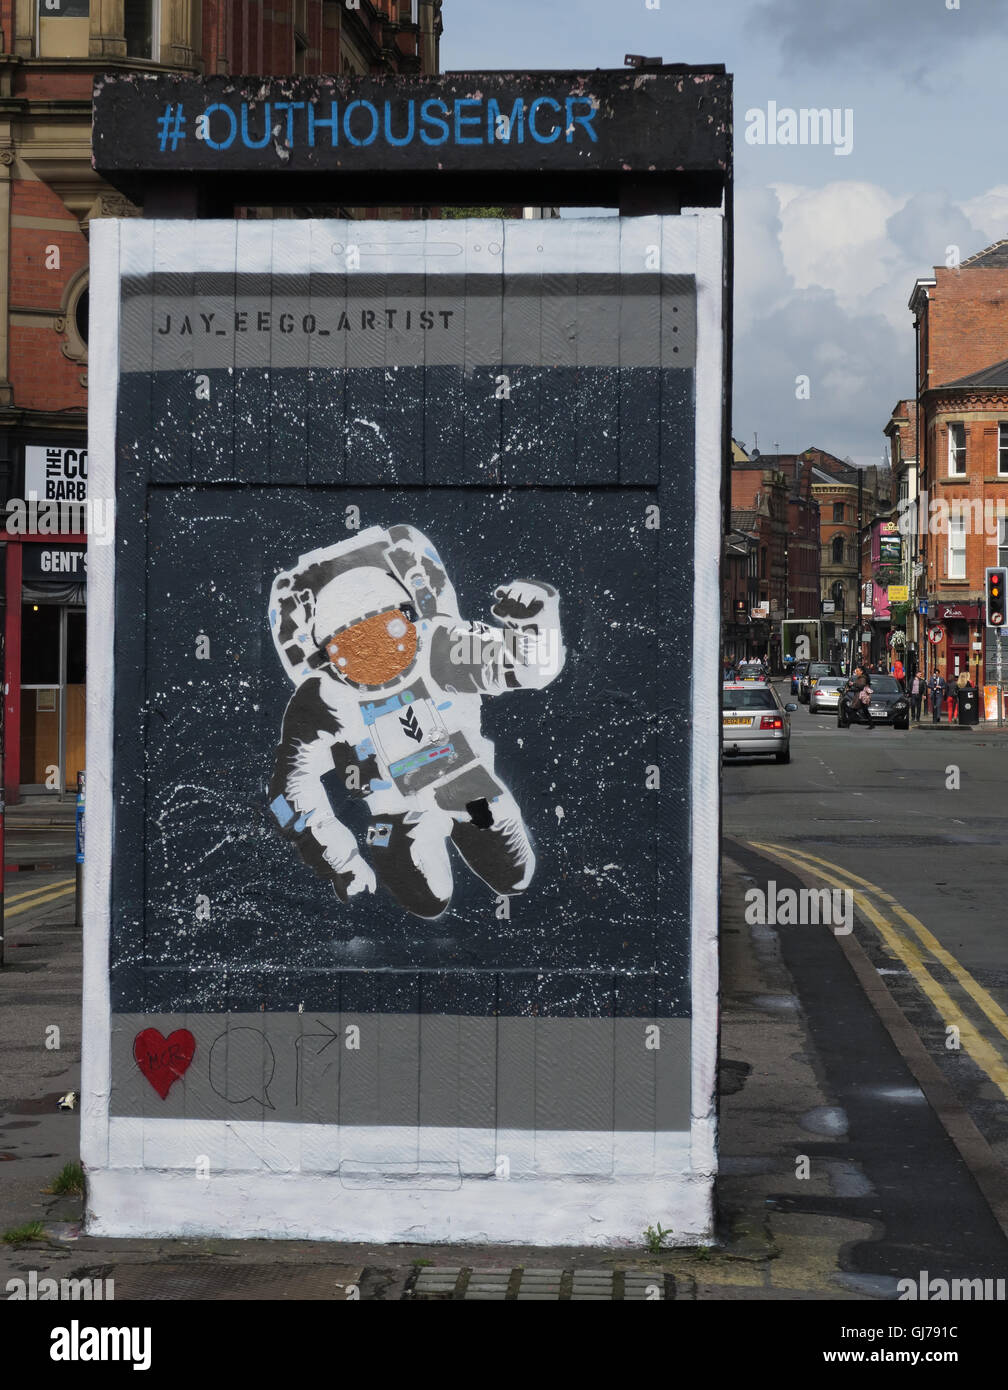 Northern Quarter Arte in Piazza Stevenson Manchester, Regno Unito - Parete Graffiti agosto2016 OUTHOUSEMCR Foto Stock